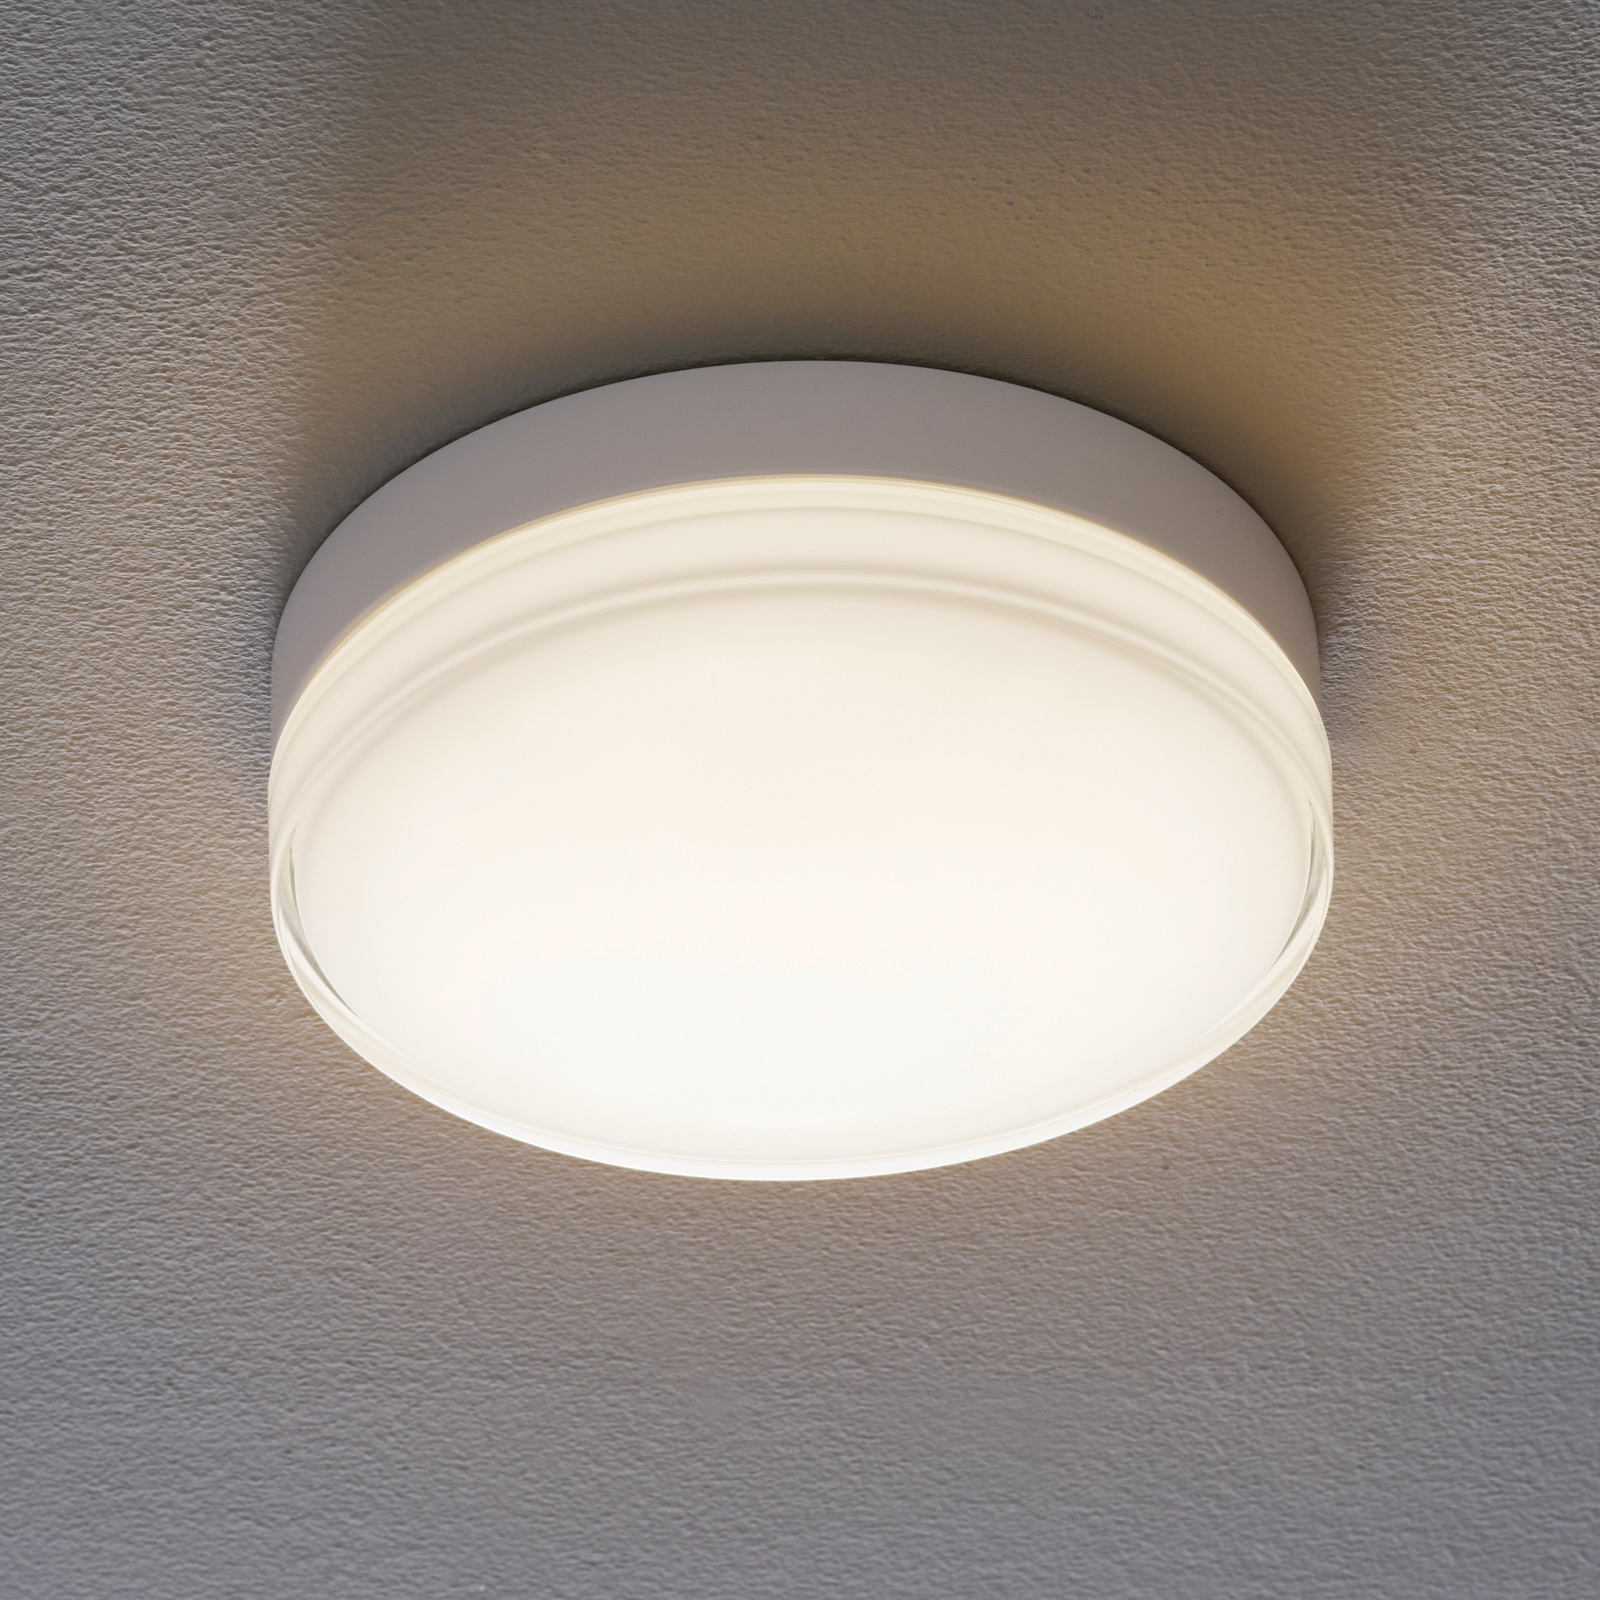 BEGA 12127/12128 LED plafondlamp DALI 930